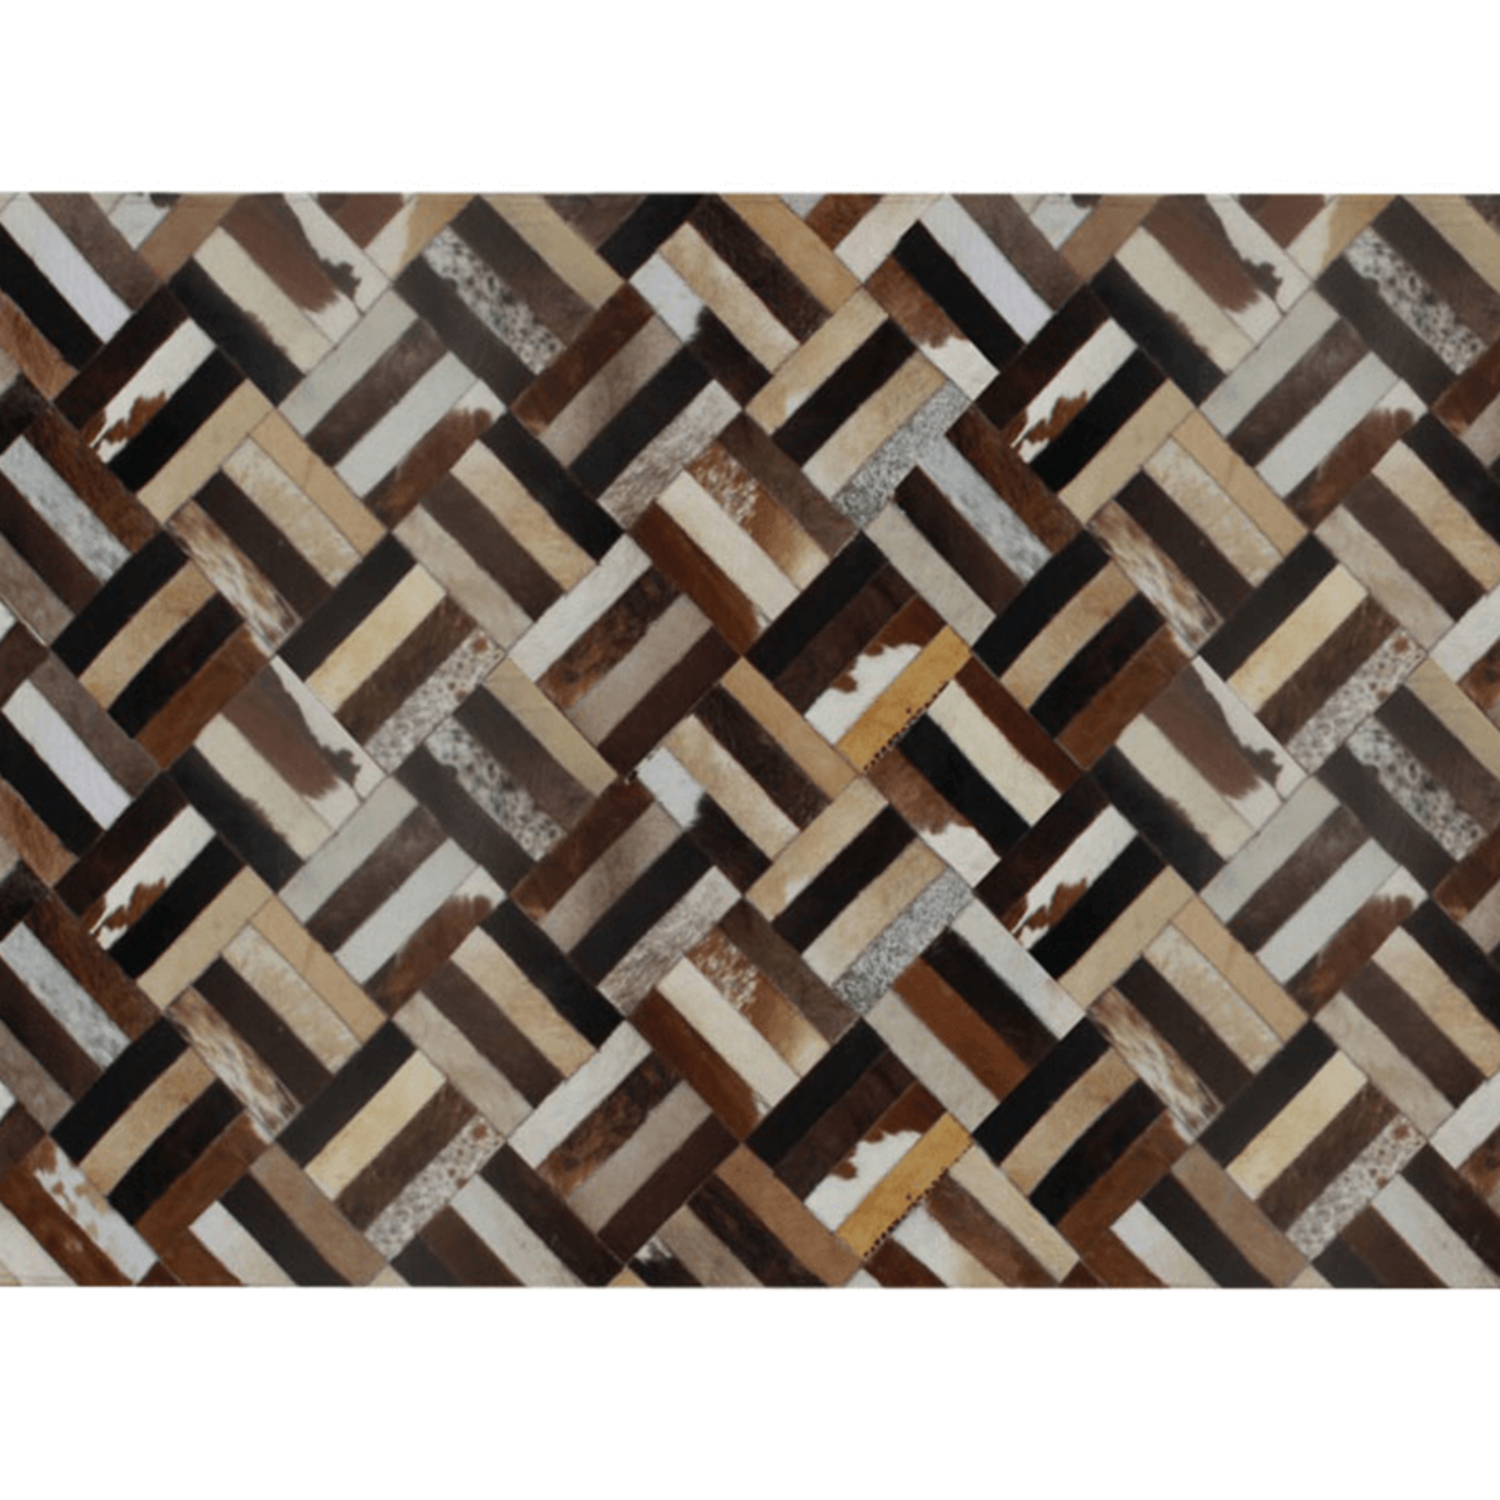 Luxus bőrszőnyeg, barna/fekete/bézs, patchwork, 120x180 , bőr TIP 2